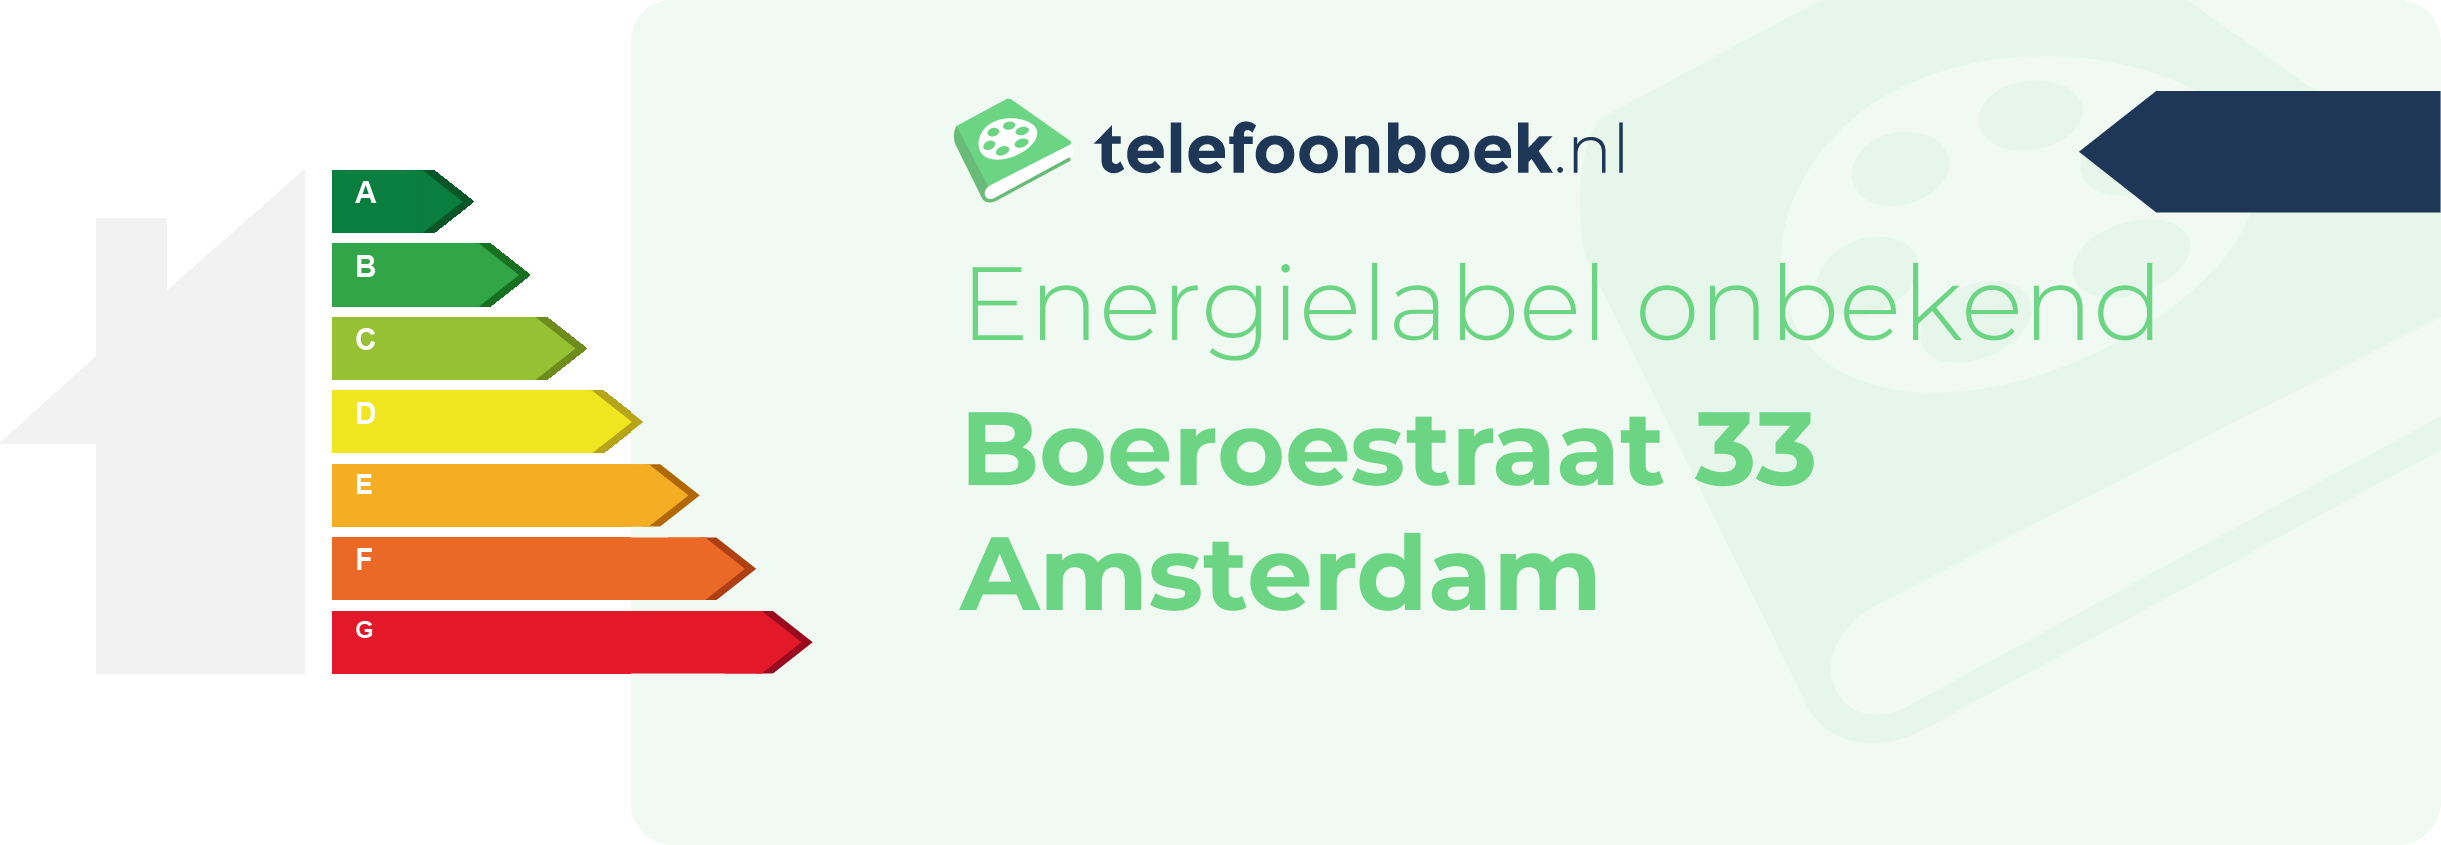 Energielabel Boeroestraat 33 Amsterdam